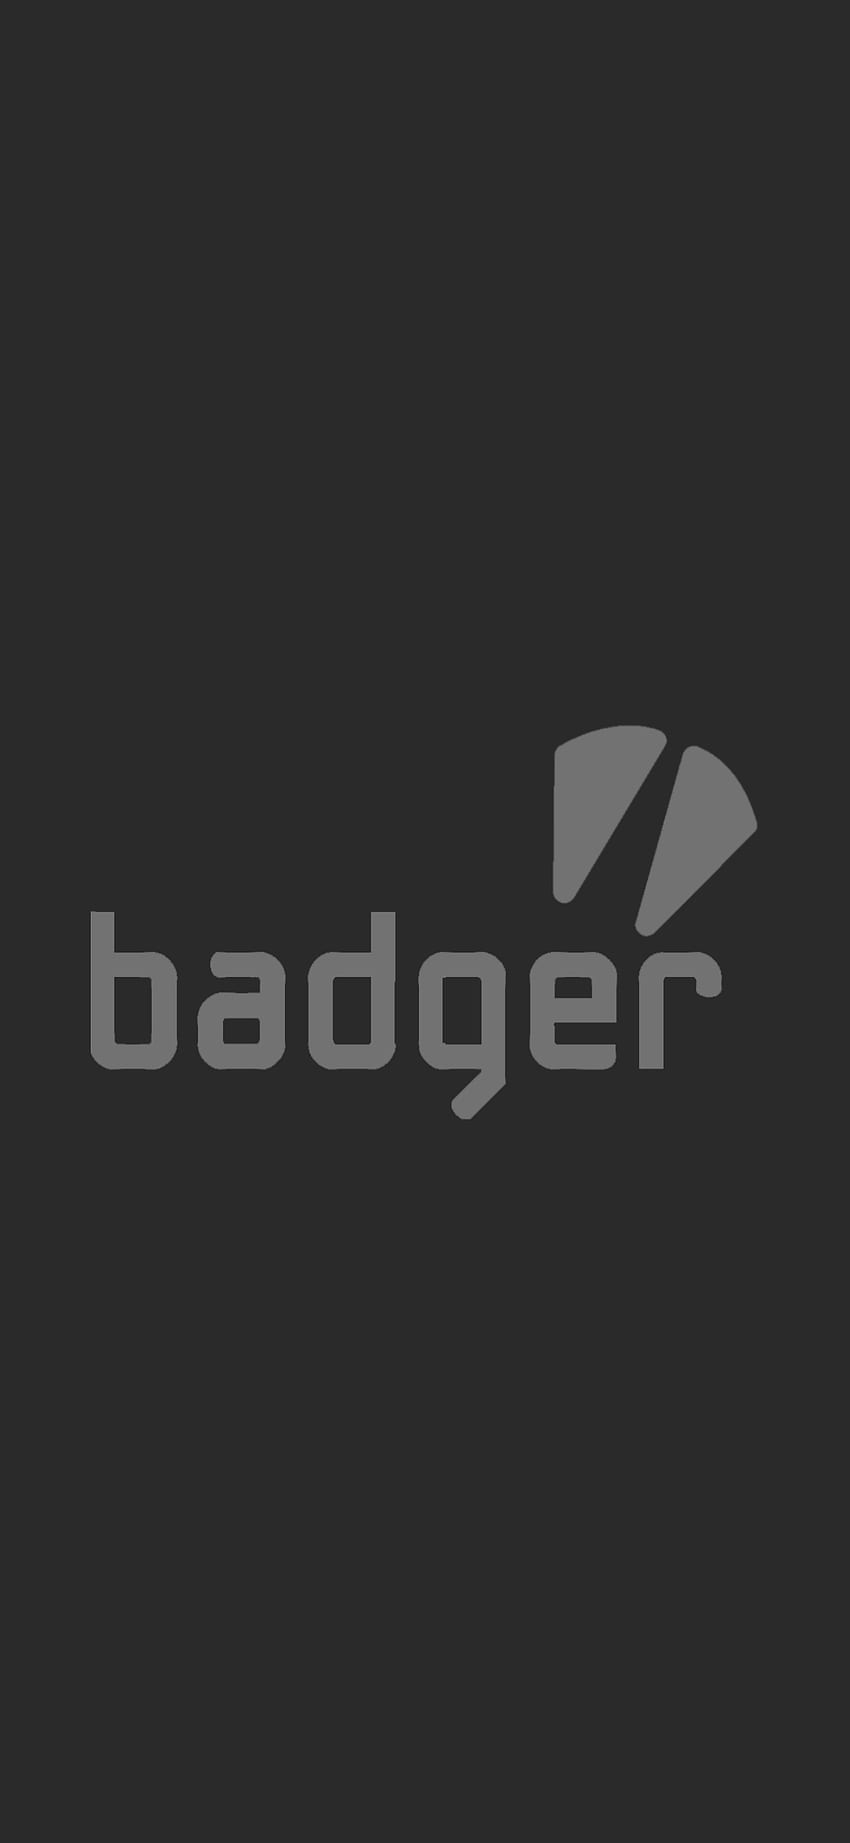 BADGER, Pencurian besar otomatis, gta, GTA IV wallpaper ponsel HD